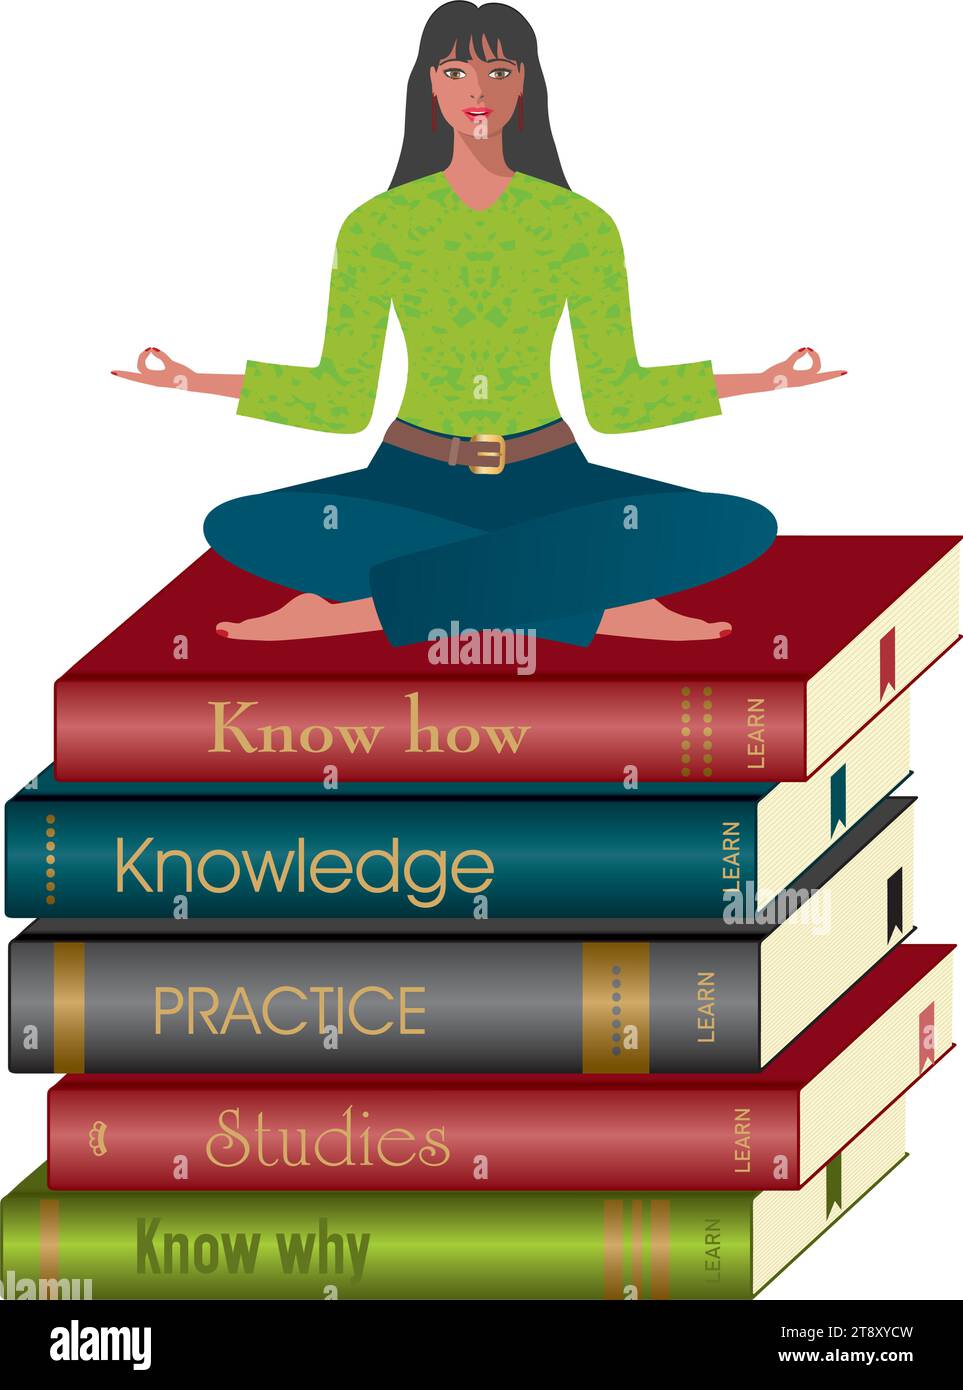 Femme en position yoga assise sur une pile de livres. Isolé. Illustration vectorielle. Illustration de Vecteur